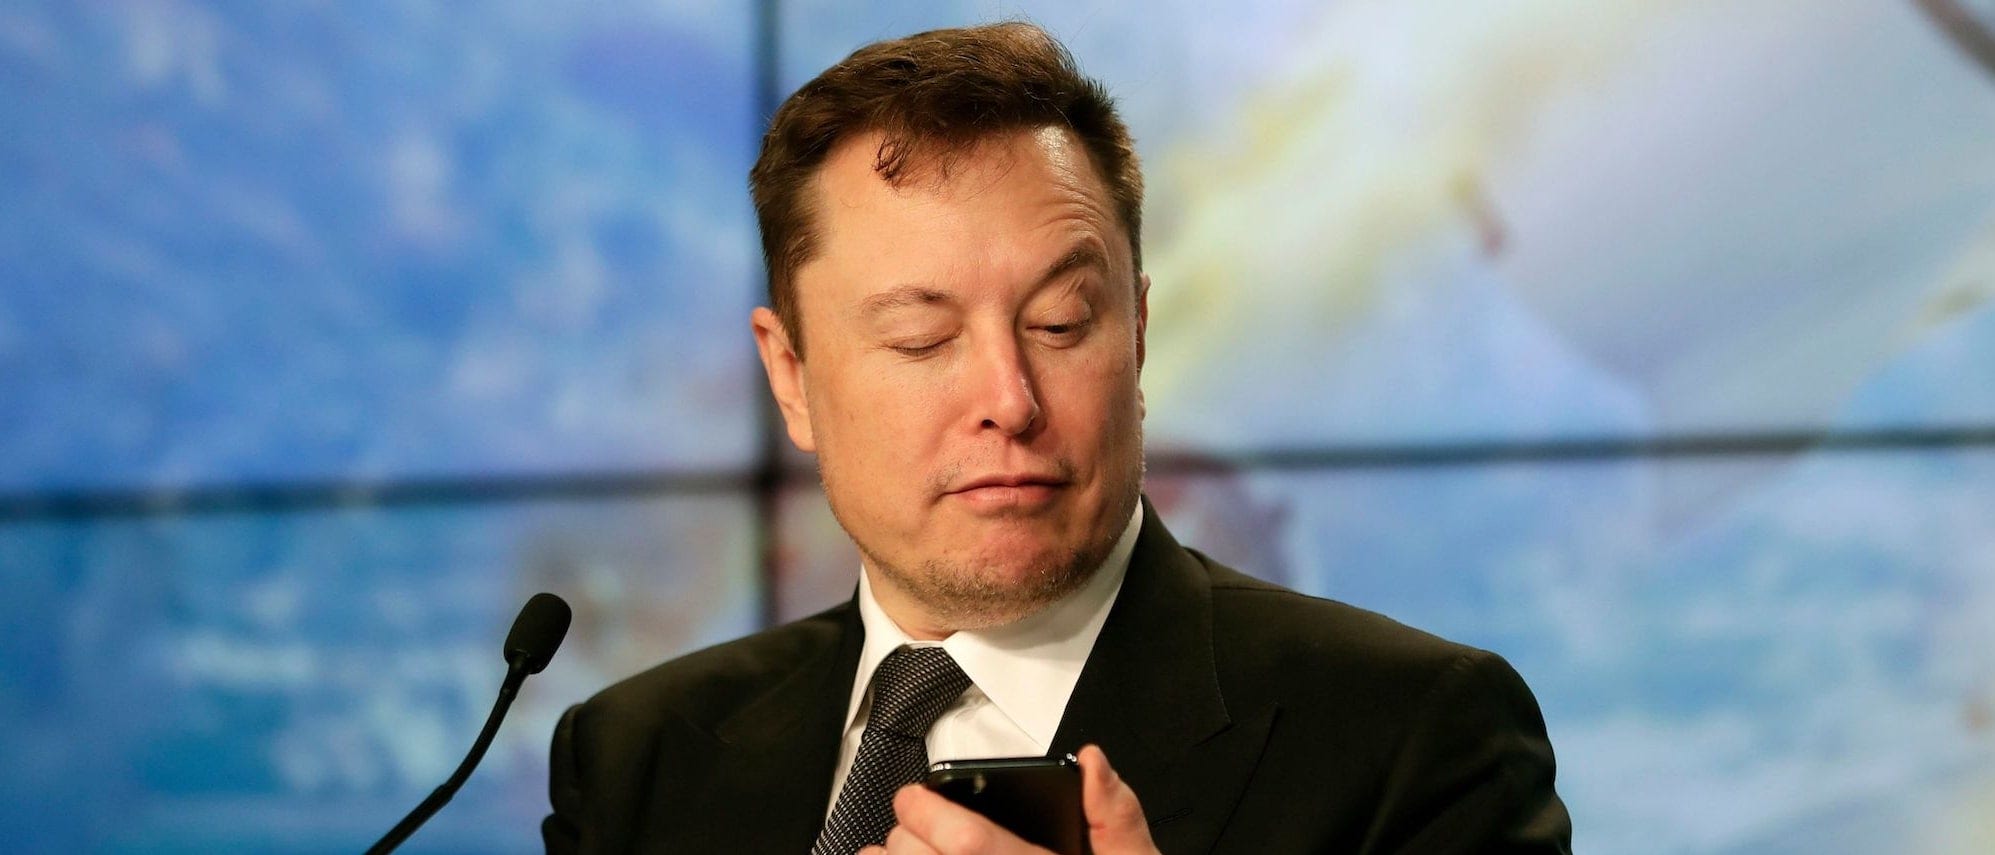 SpaceX ha già licenziato i dipendenti che avevano promosso la lettera contro Elon Musk